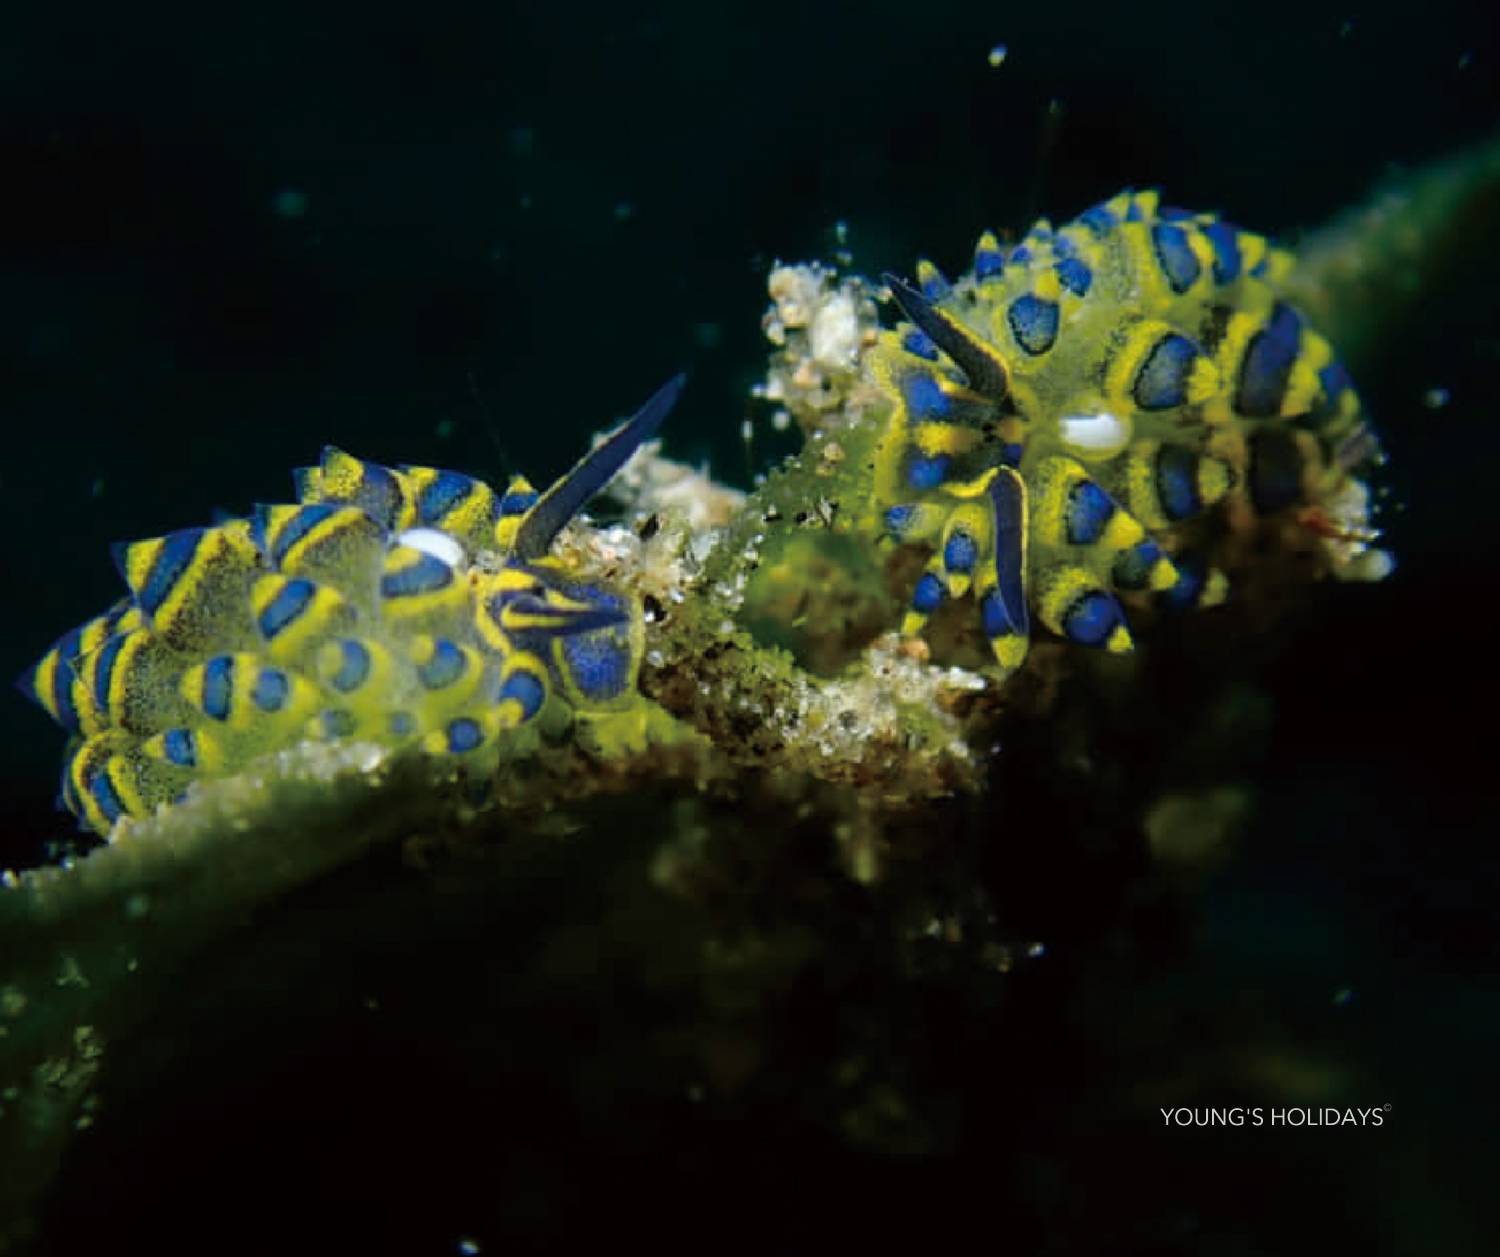 【菲律賓】杜馬加德 Azure Dive Resort 5日4夜潛水自由行套票